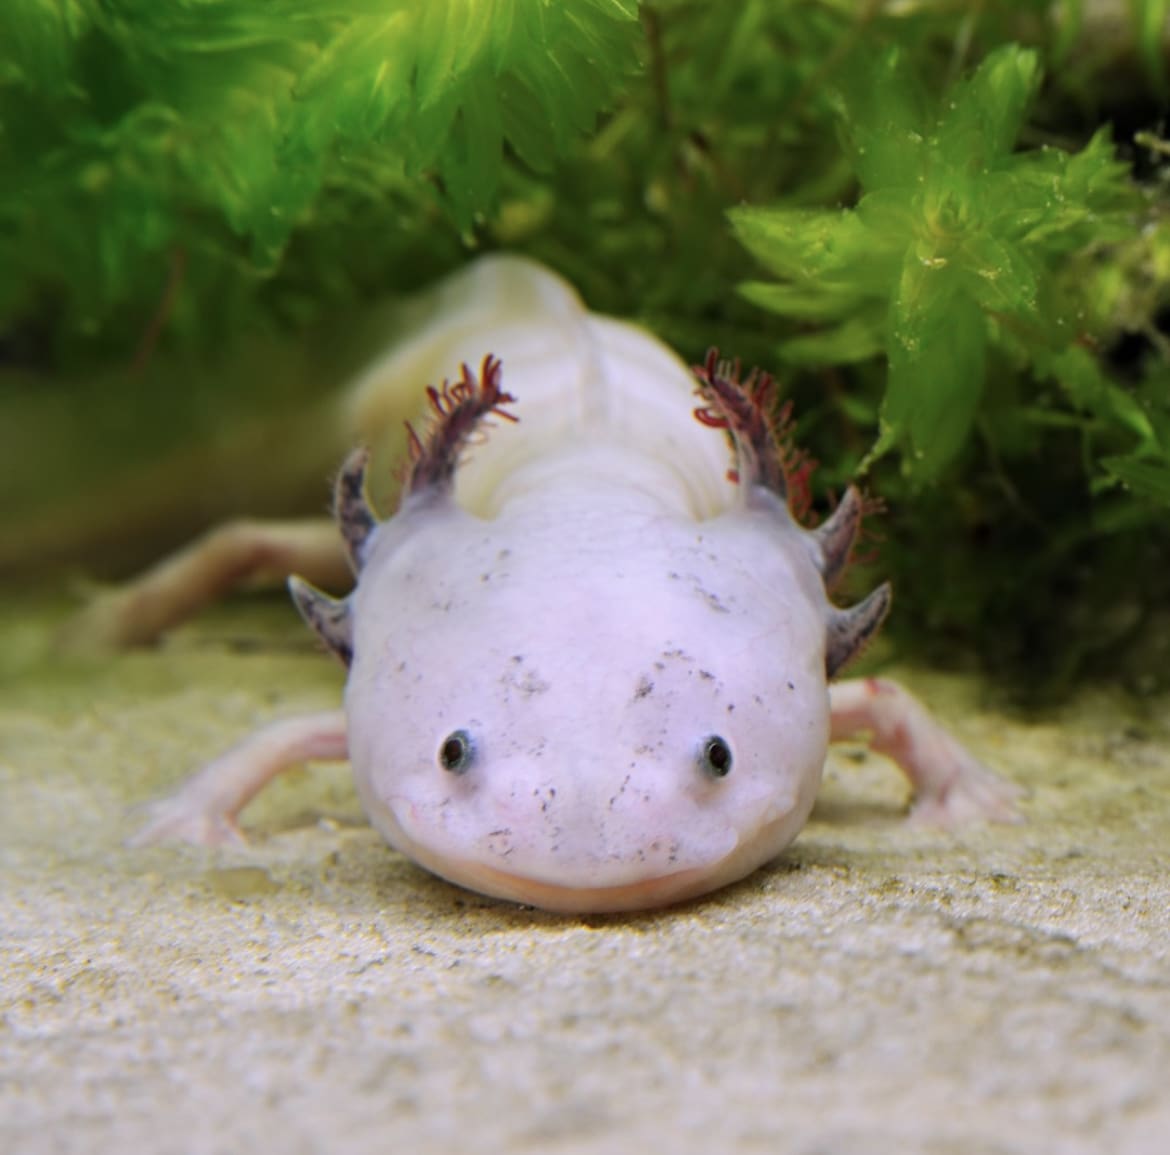 White axolotl